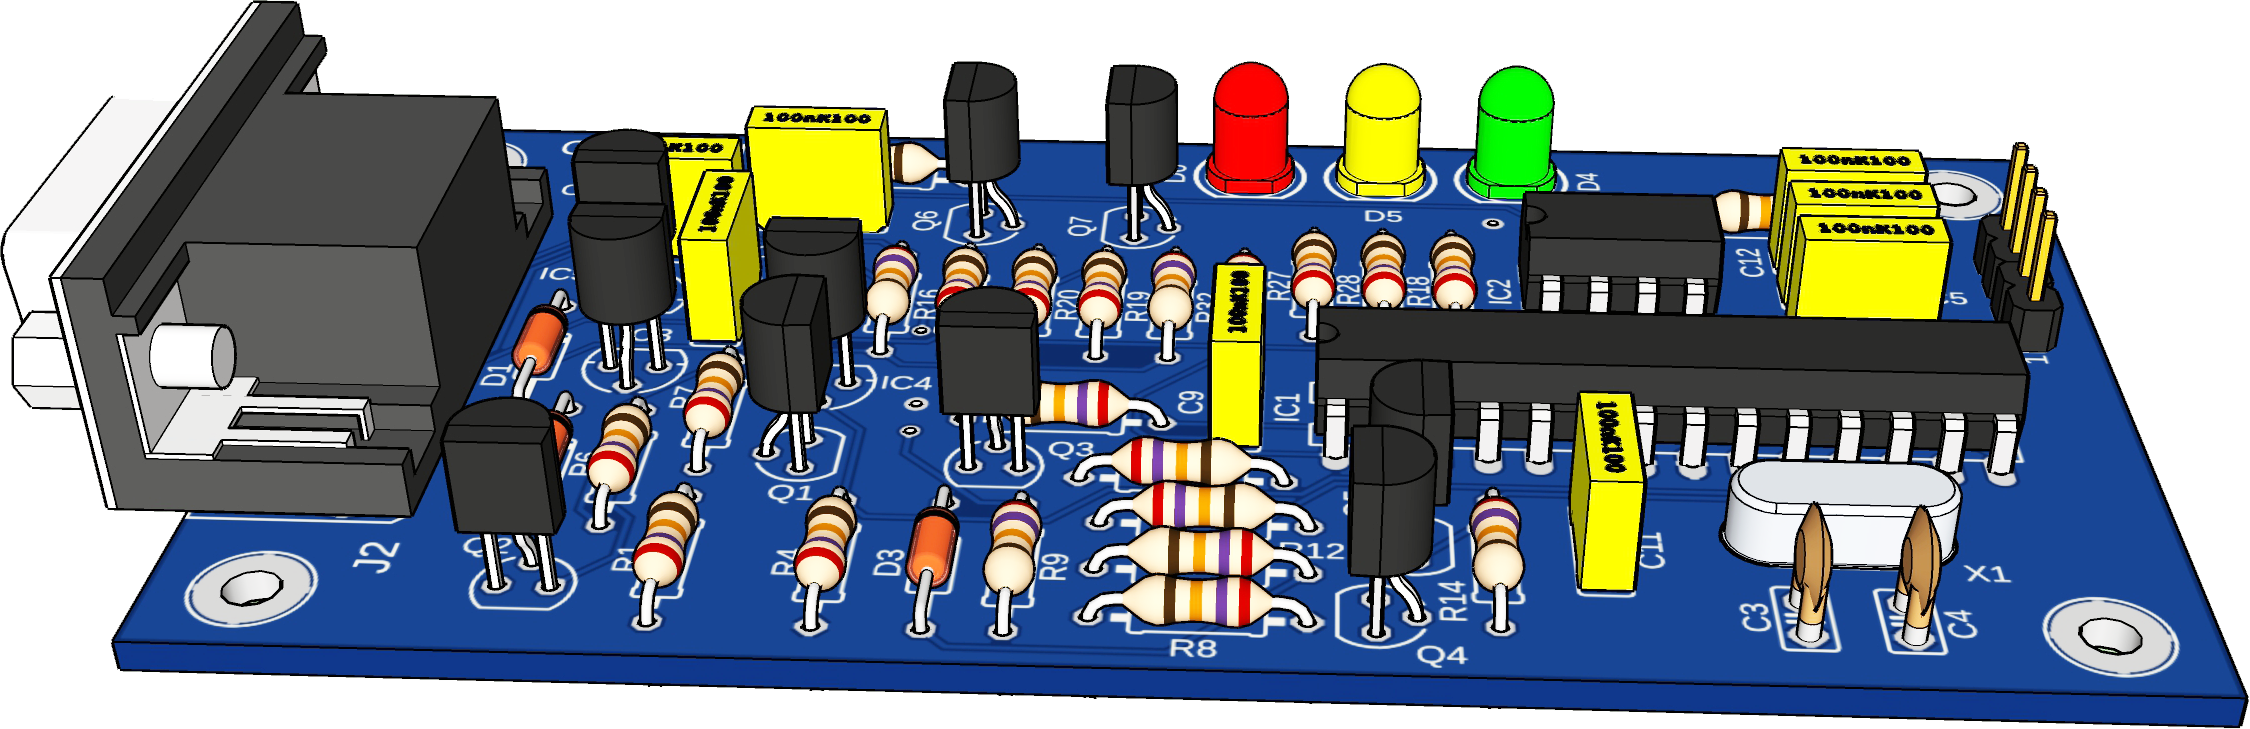 ELM327 adapter